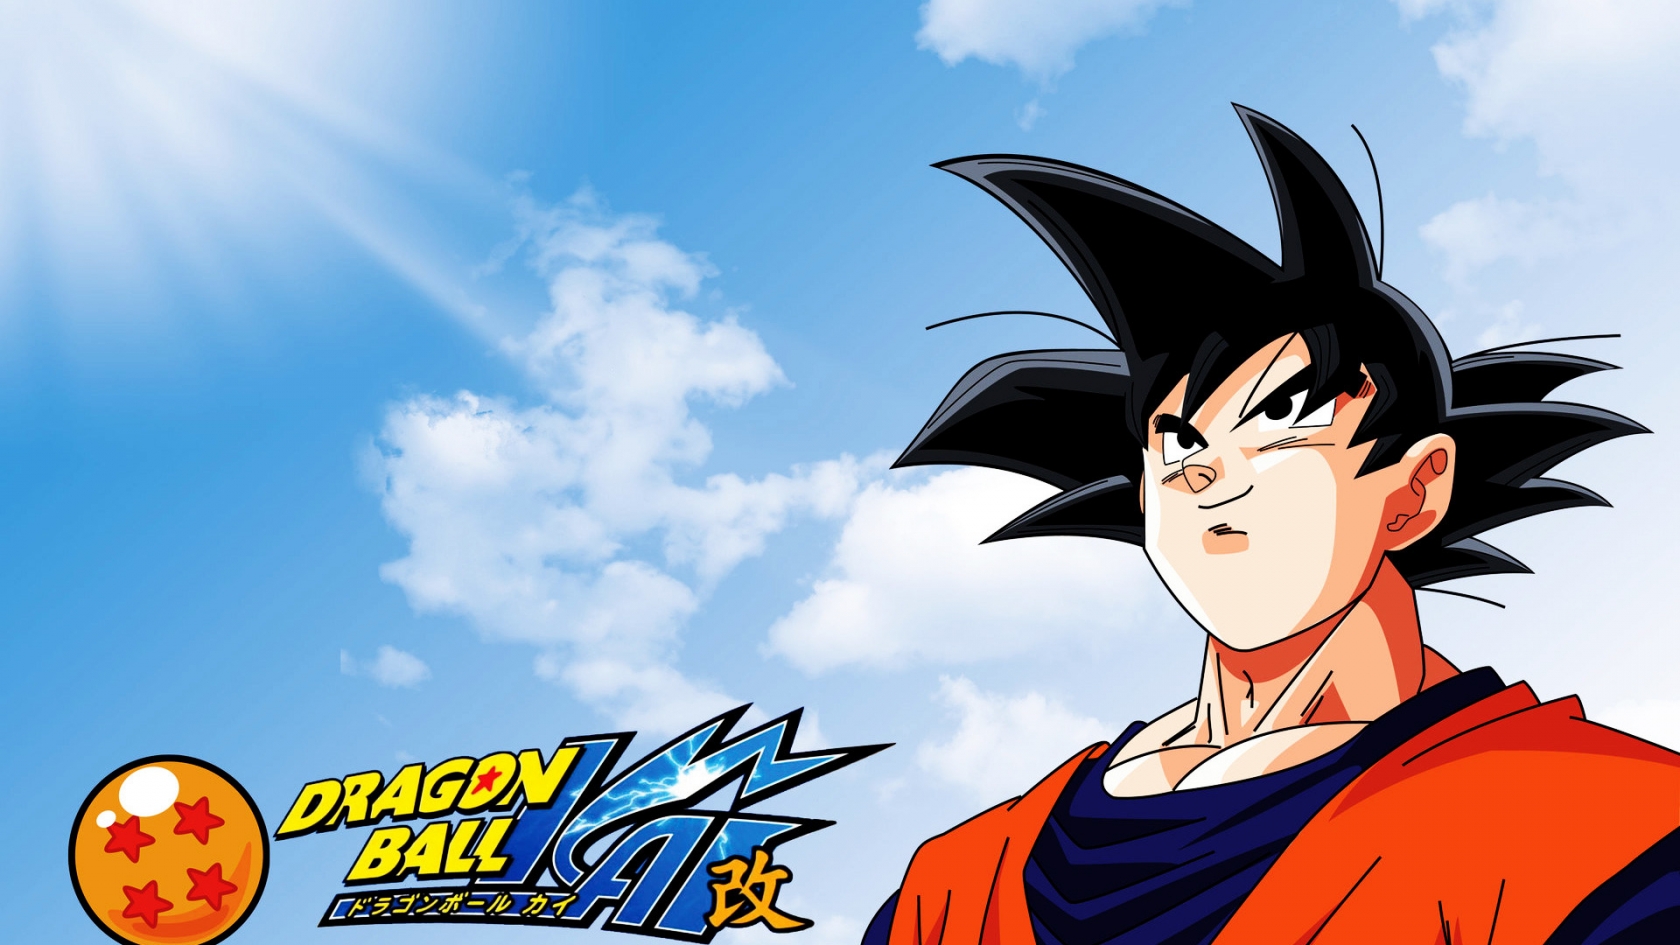 Dragon Ball Manga for 1680 x 945 HDTV resolution